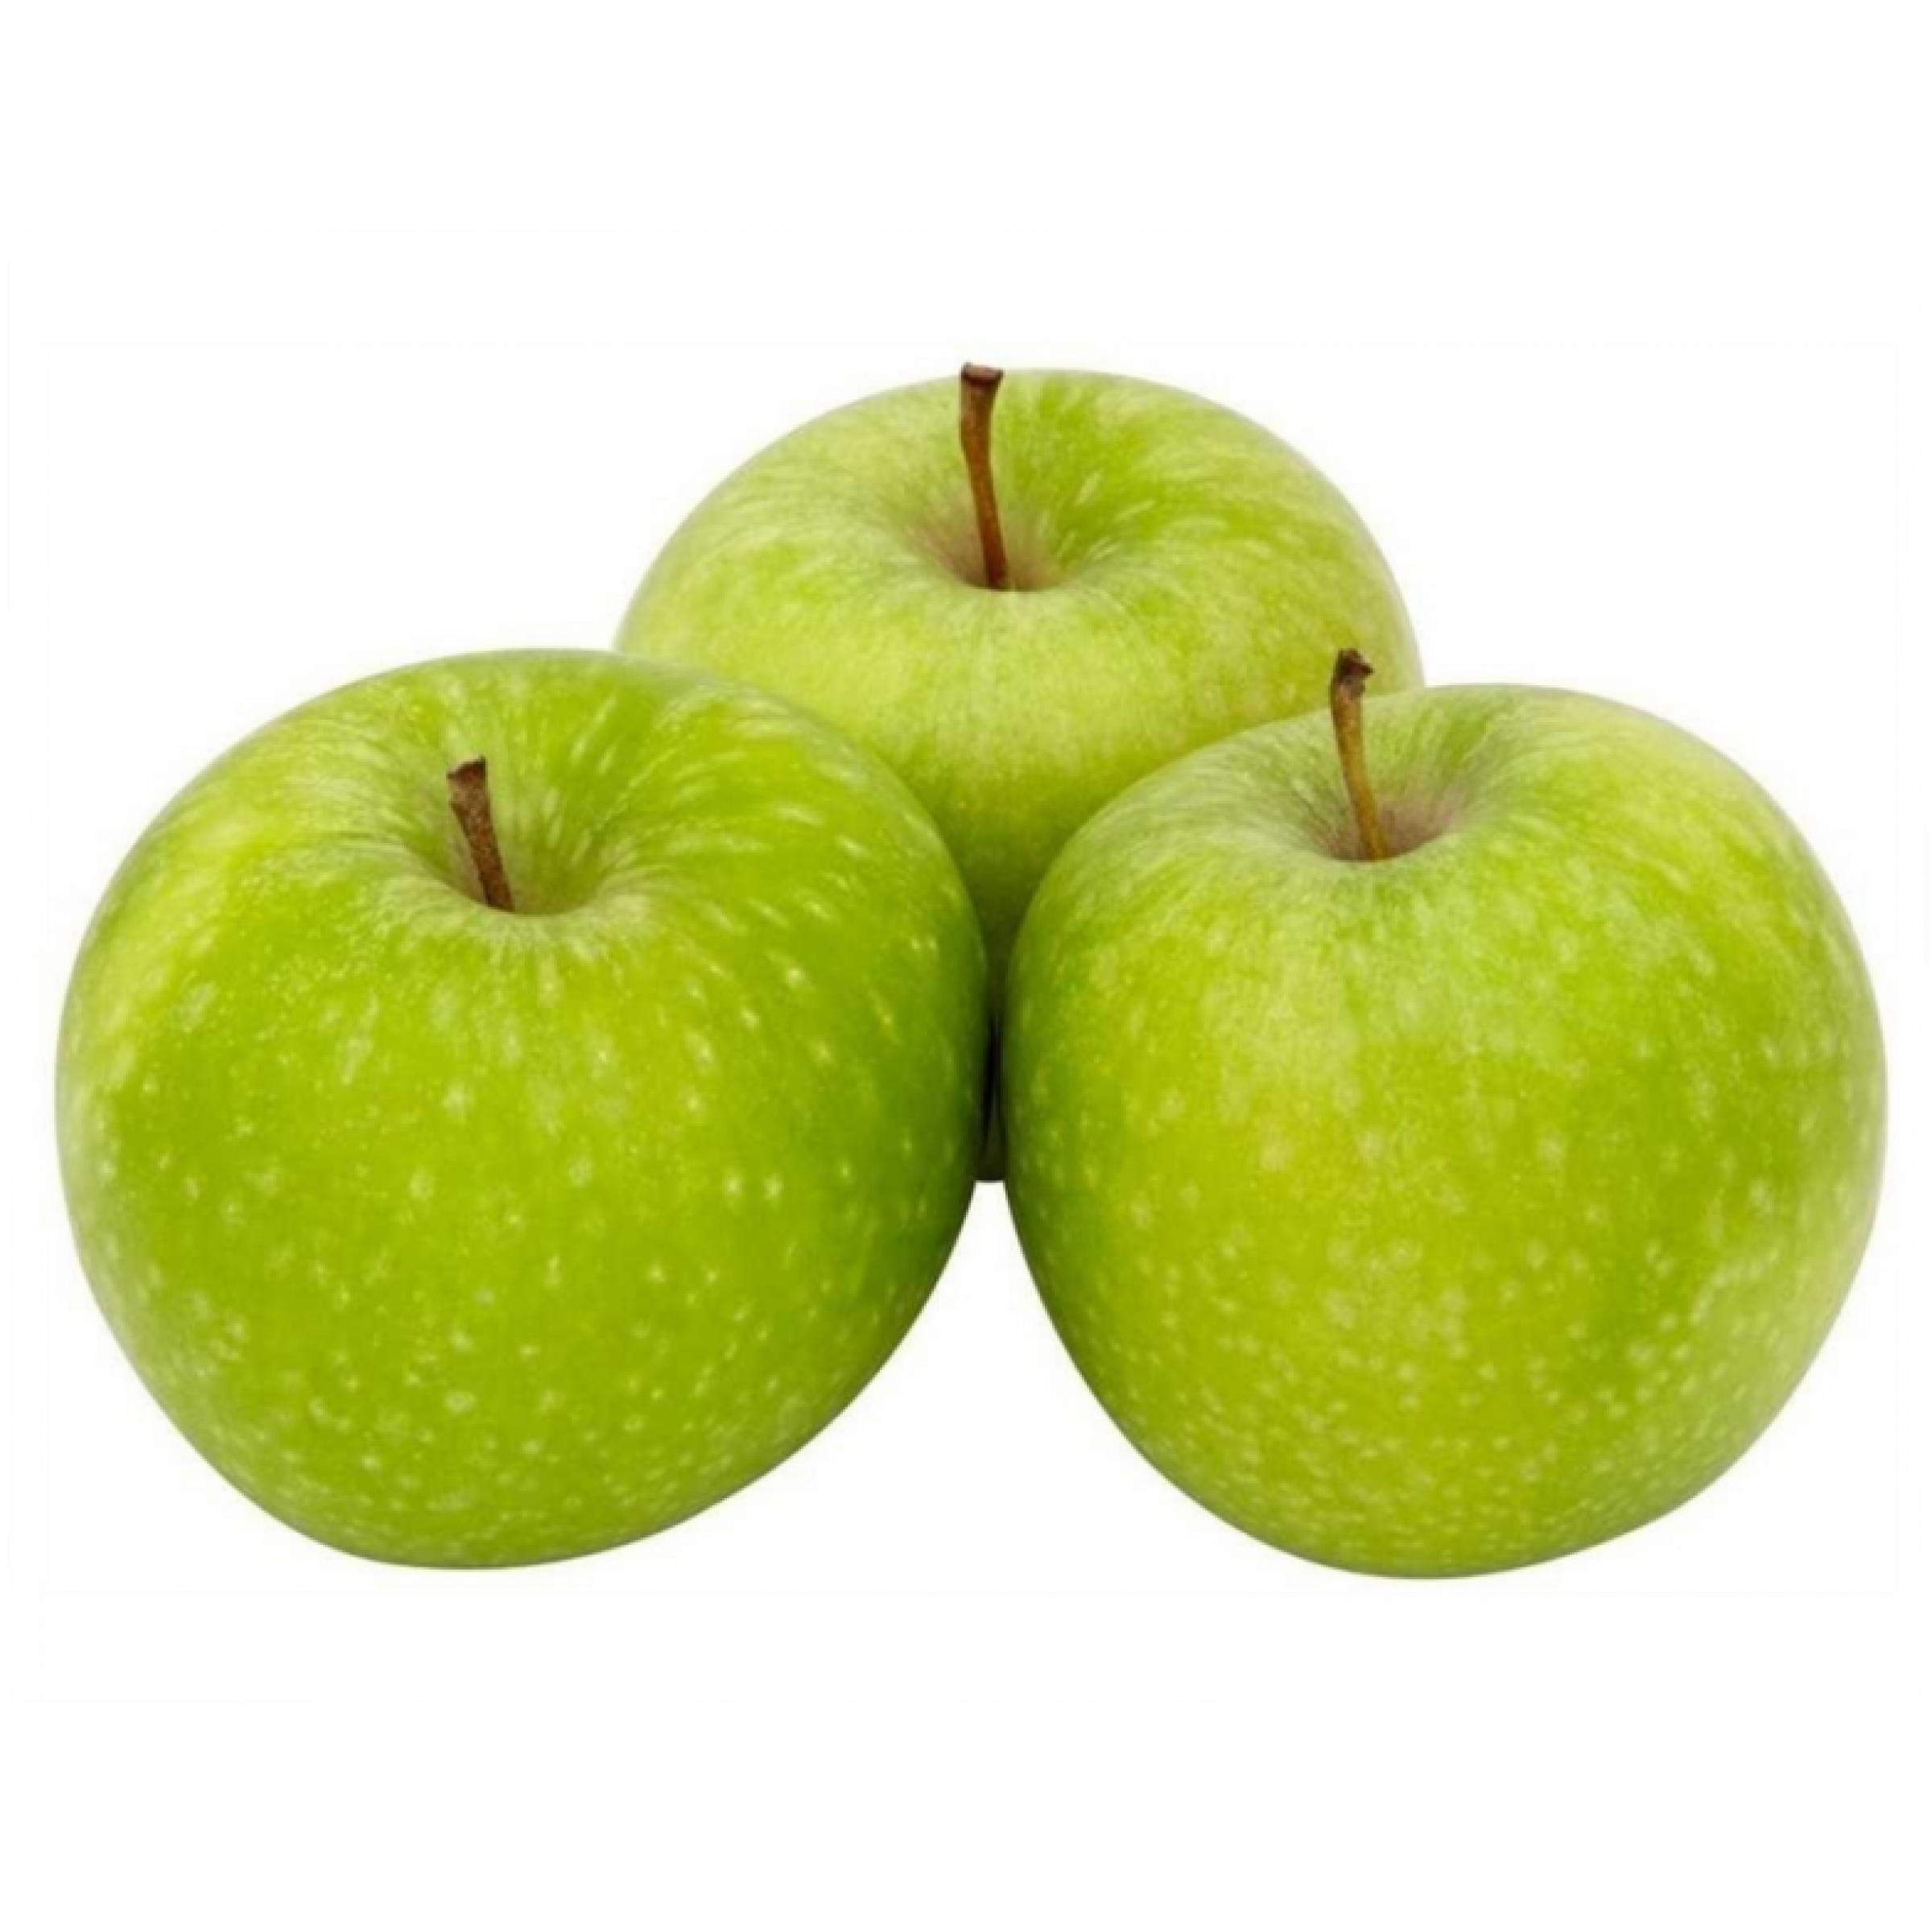 Зеленые яблоки Семеренко весовые (средний вес: 1200 г)